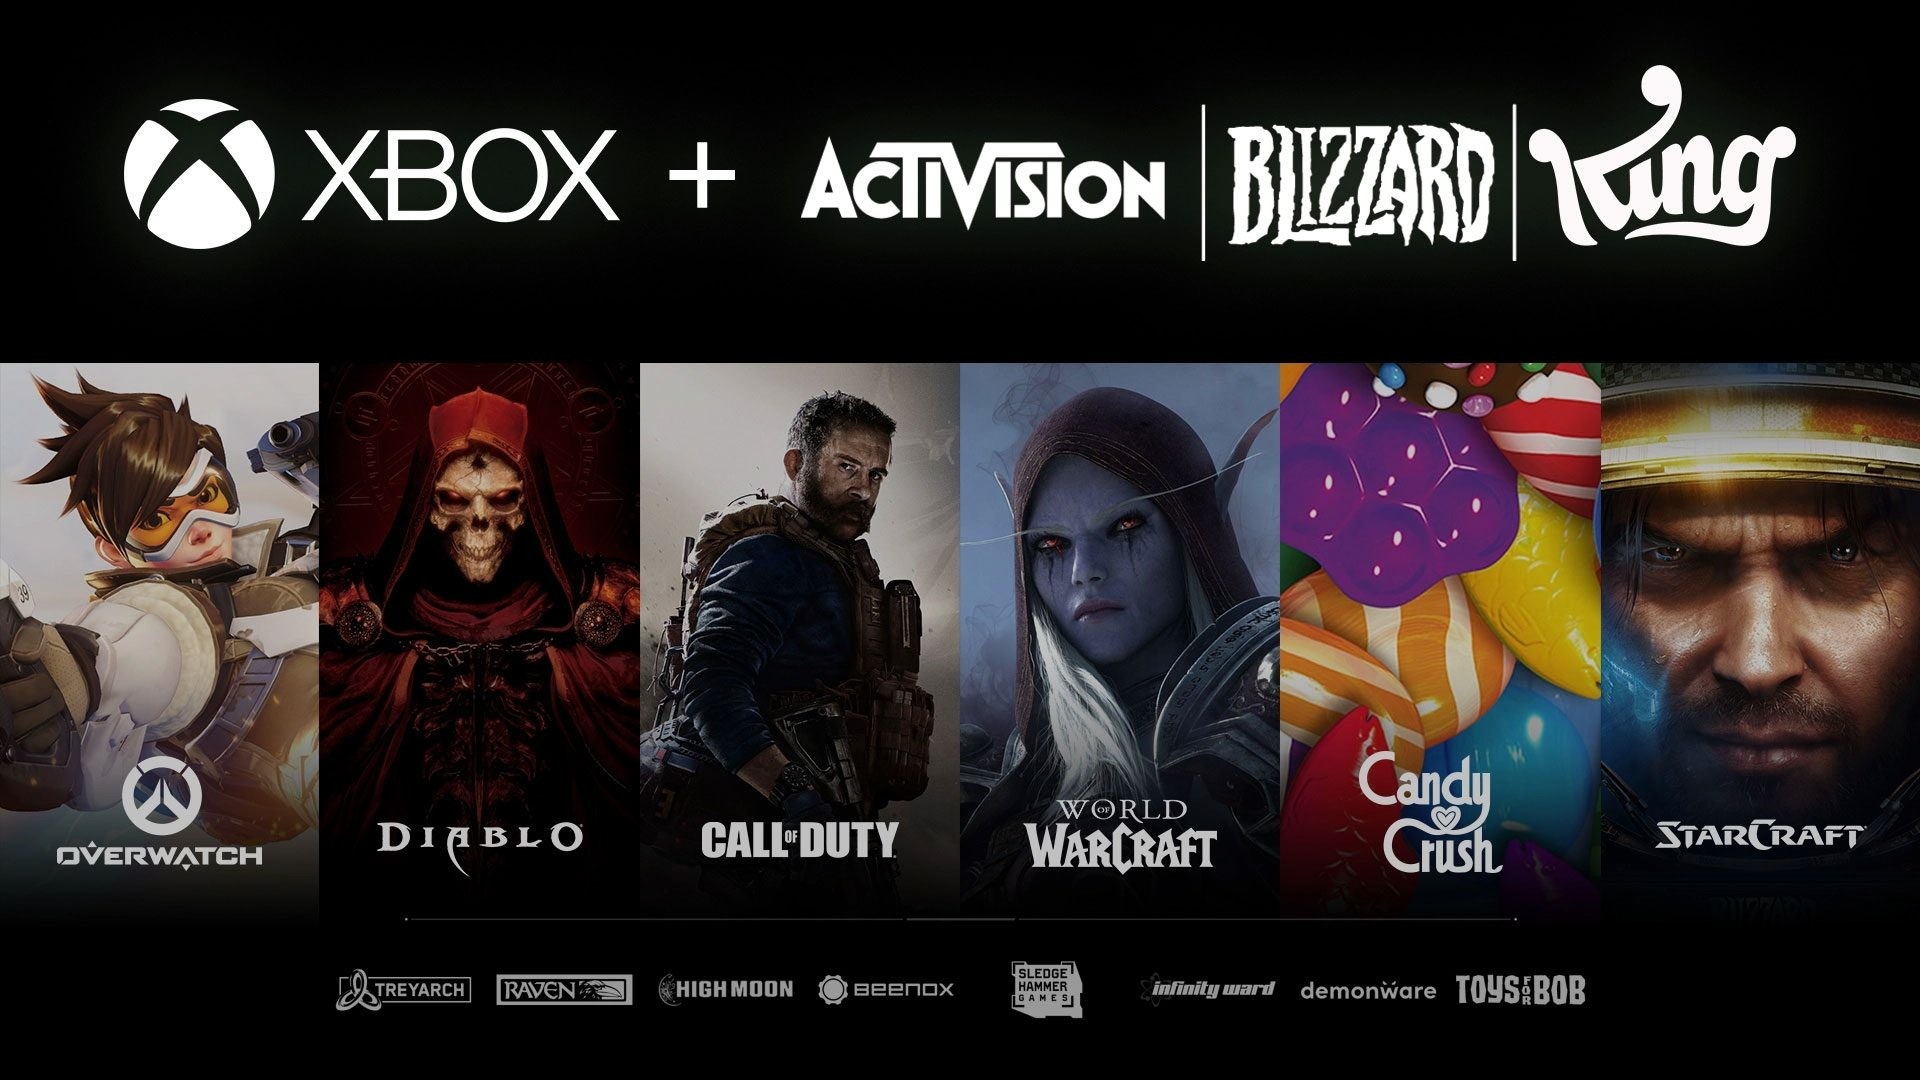 照片中提到了OVERWATCH、XBOX + ACTIVISION BILZZARD ing、DIABLO，跟暴雪娛樂、動視暴雪有關，包含了微軟收購動視暴雪、魔獸世界、Xbox One、使命召喚